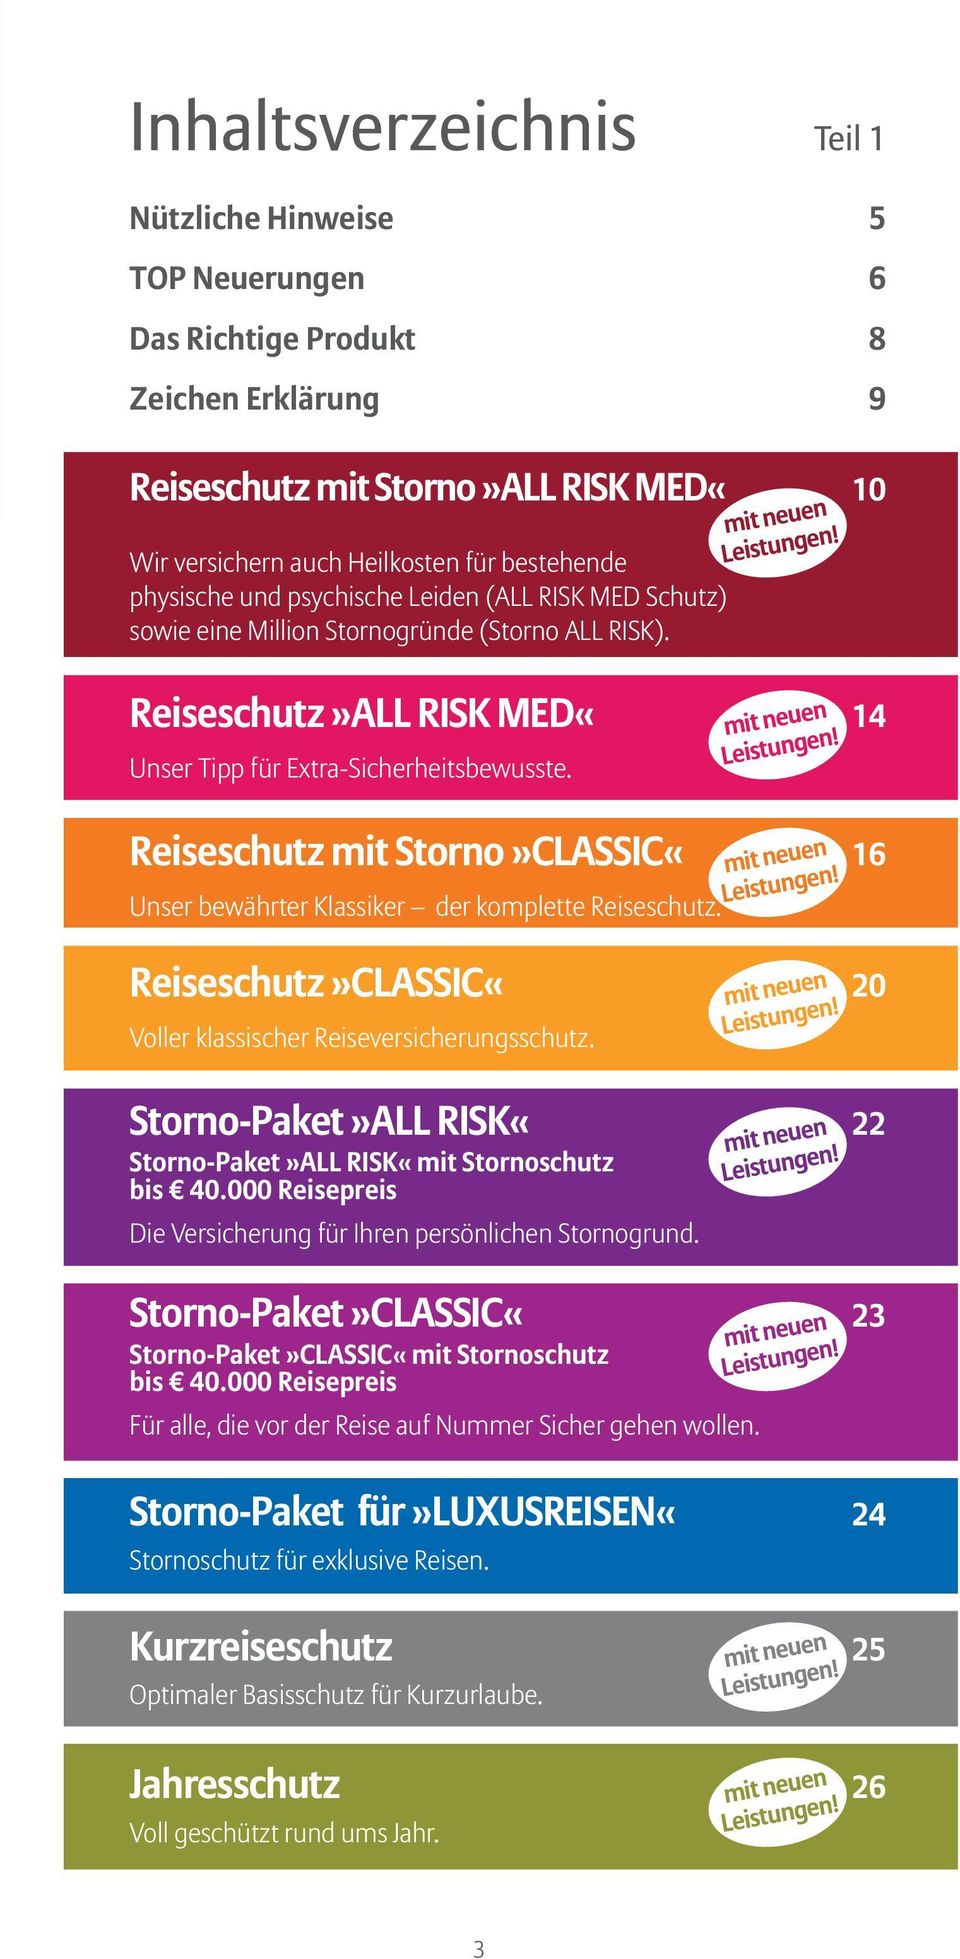 Reiseschutz mit Storno»CLASSIC«16 Unser bewährter Klassiker der komplette Reiseschutz. Reiseschutz»CLASSIC«20 Voller klassischer Reiseversicherungsschutz.